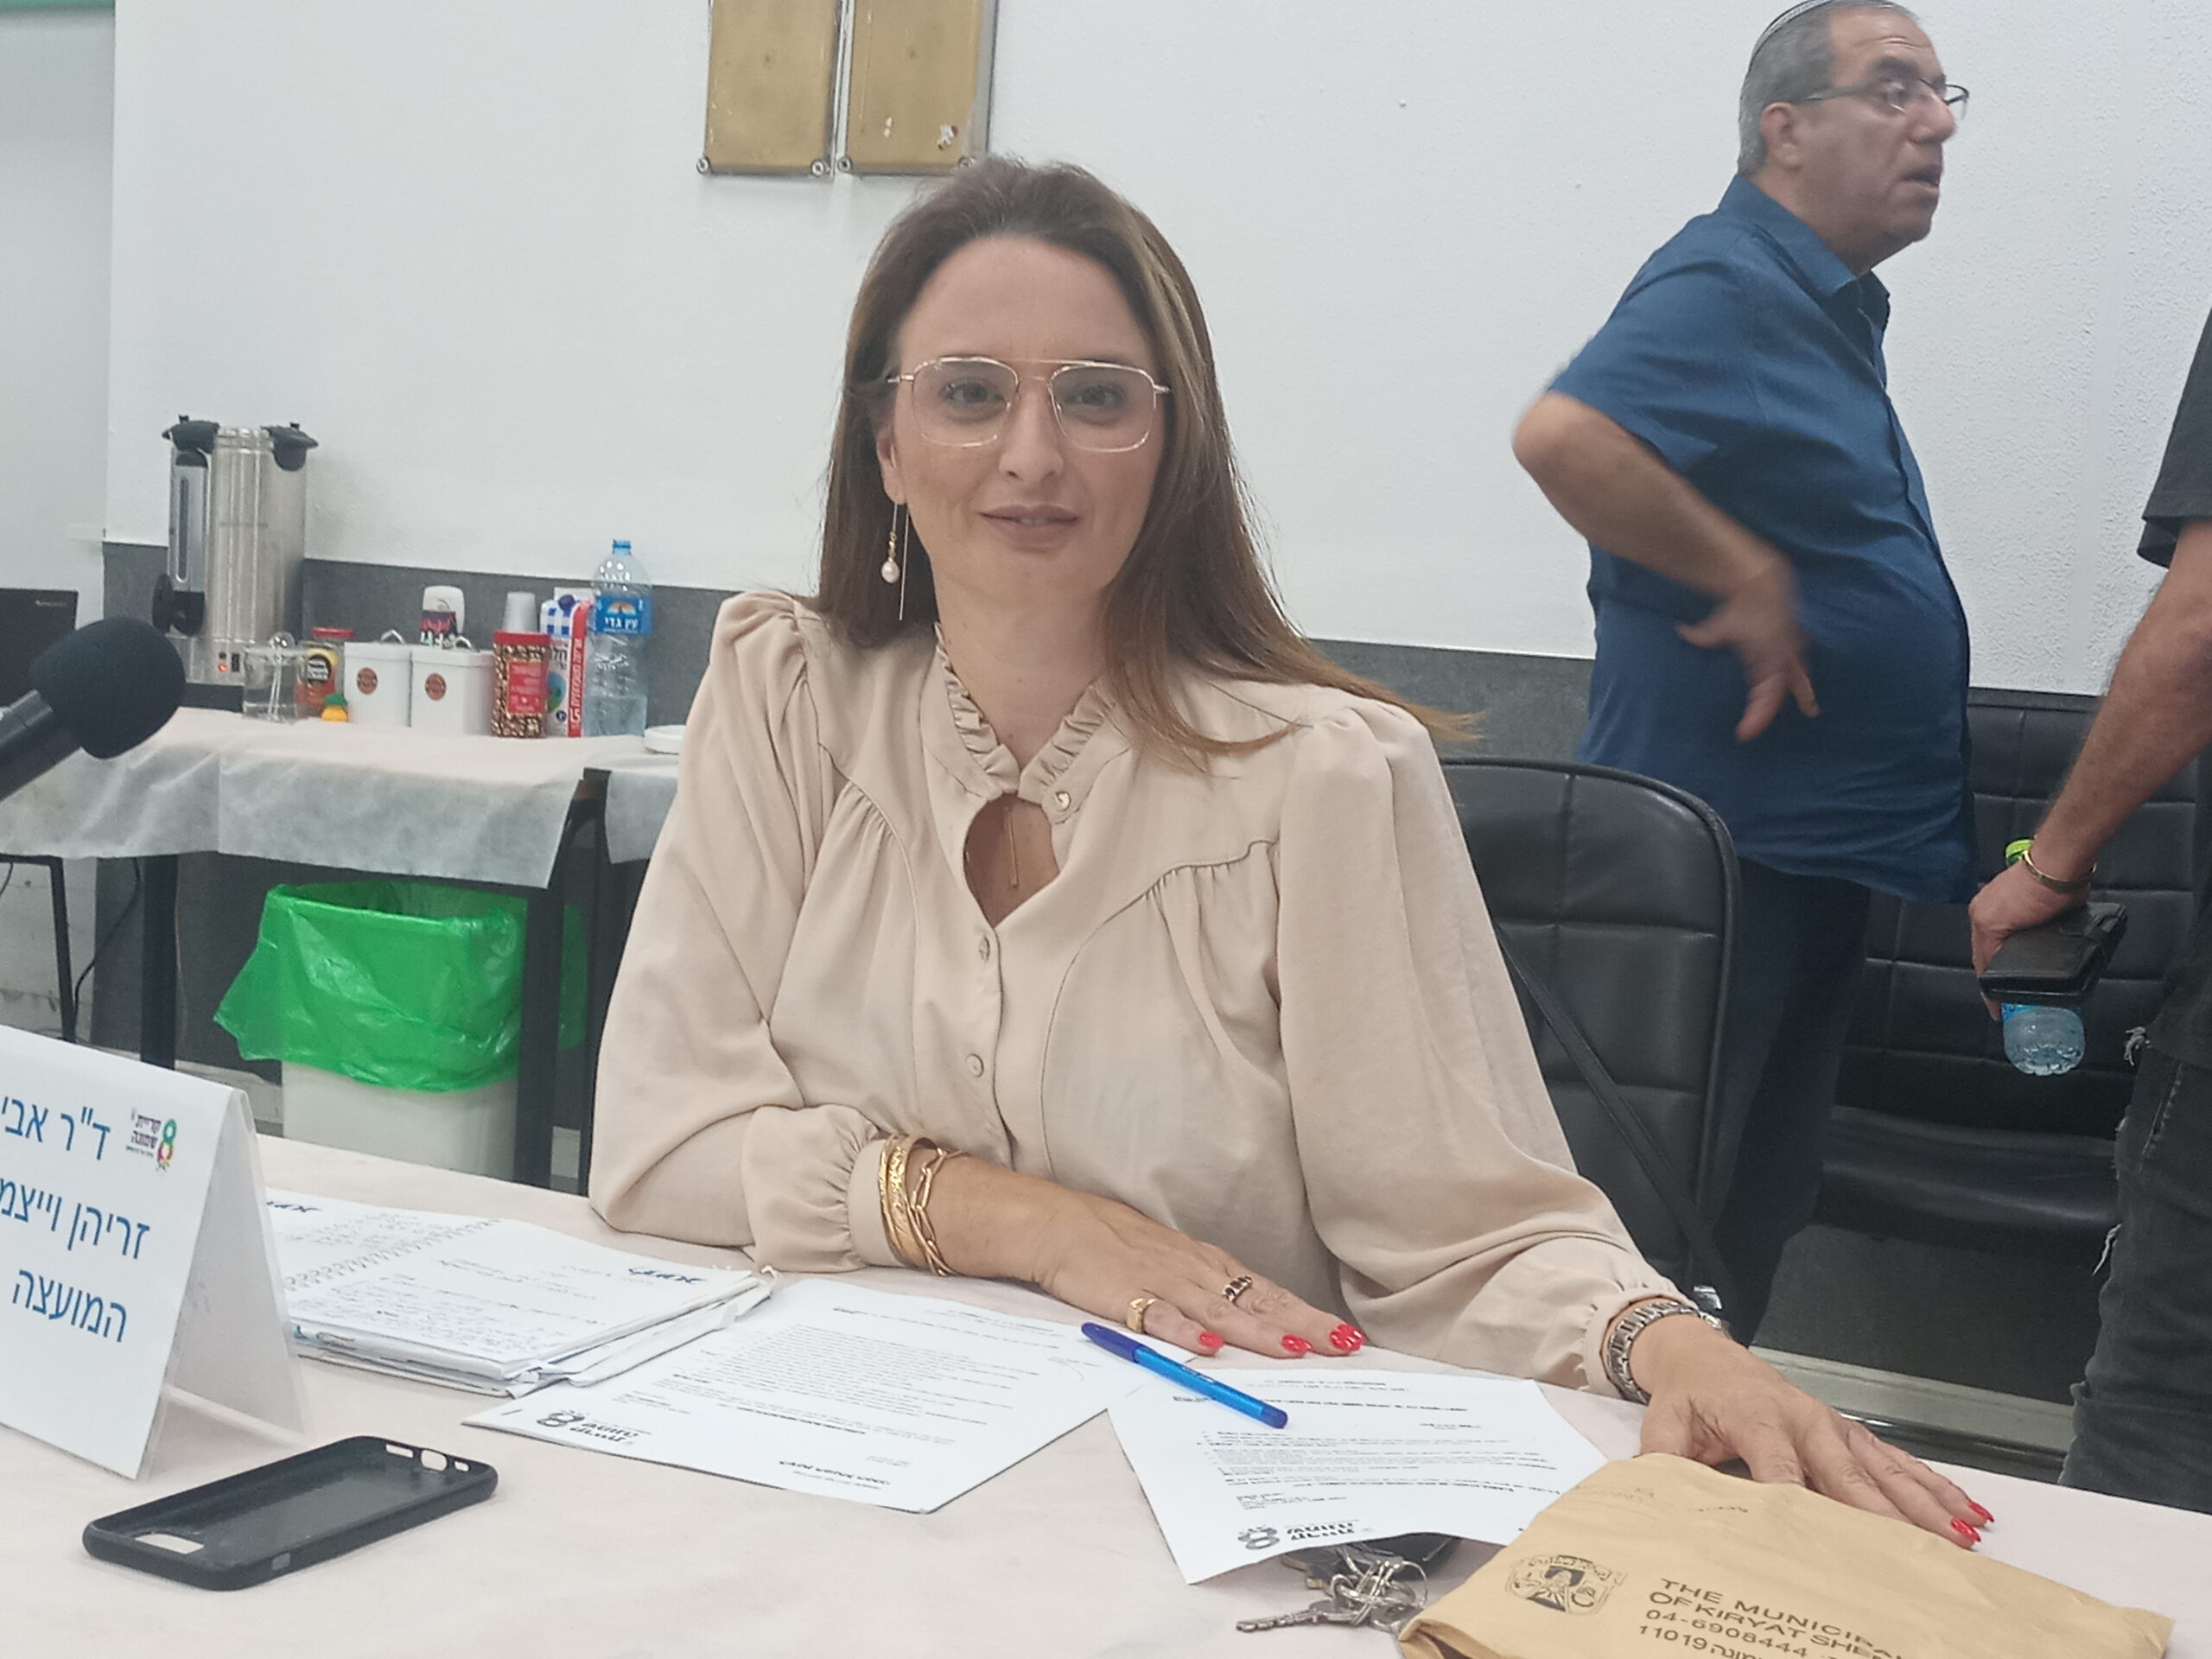 חברת מועצת העיר ד”ר אביבה זריהן ויצמן הצהירה על התמודדות לראשות העיר בישיבת מועצת עיר